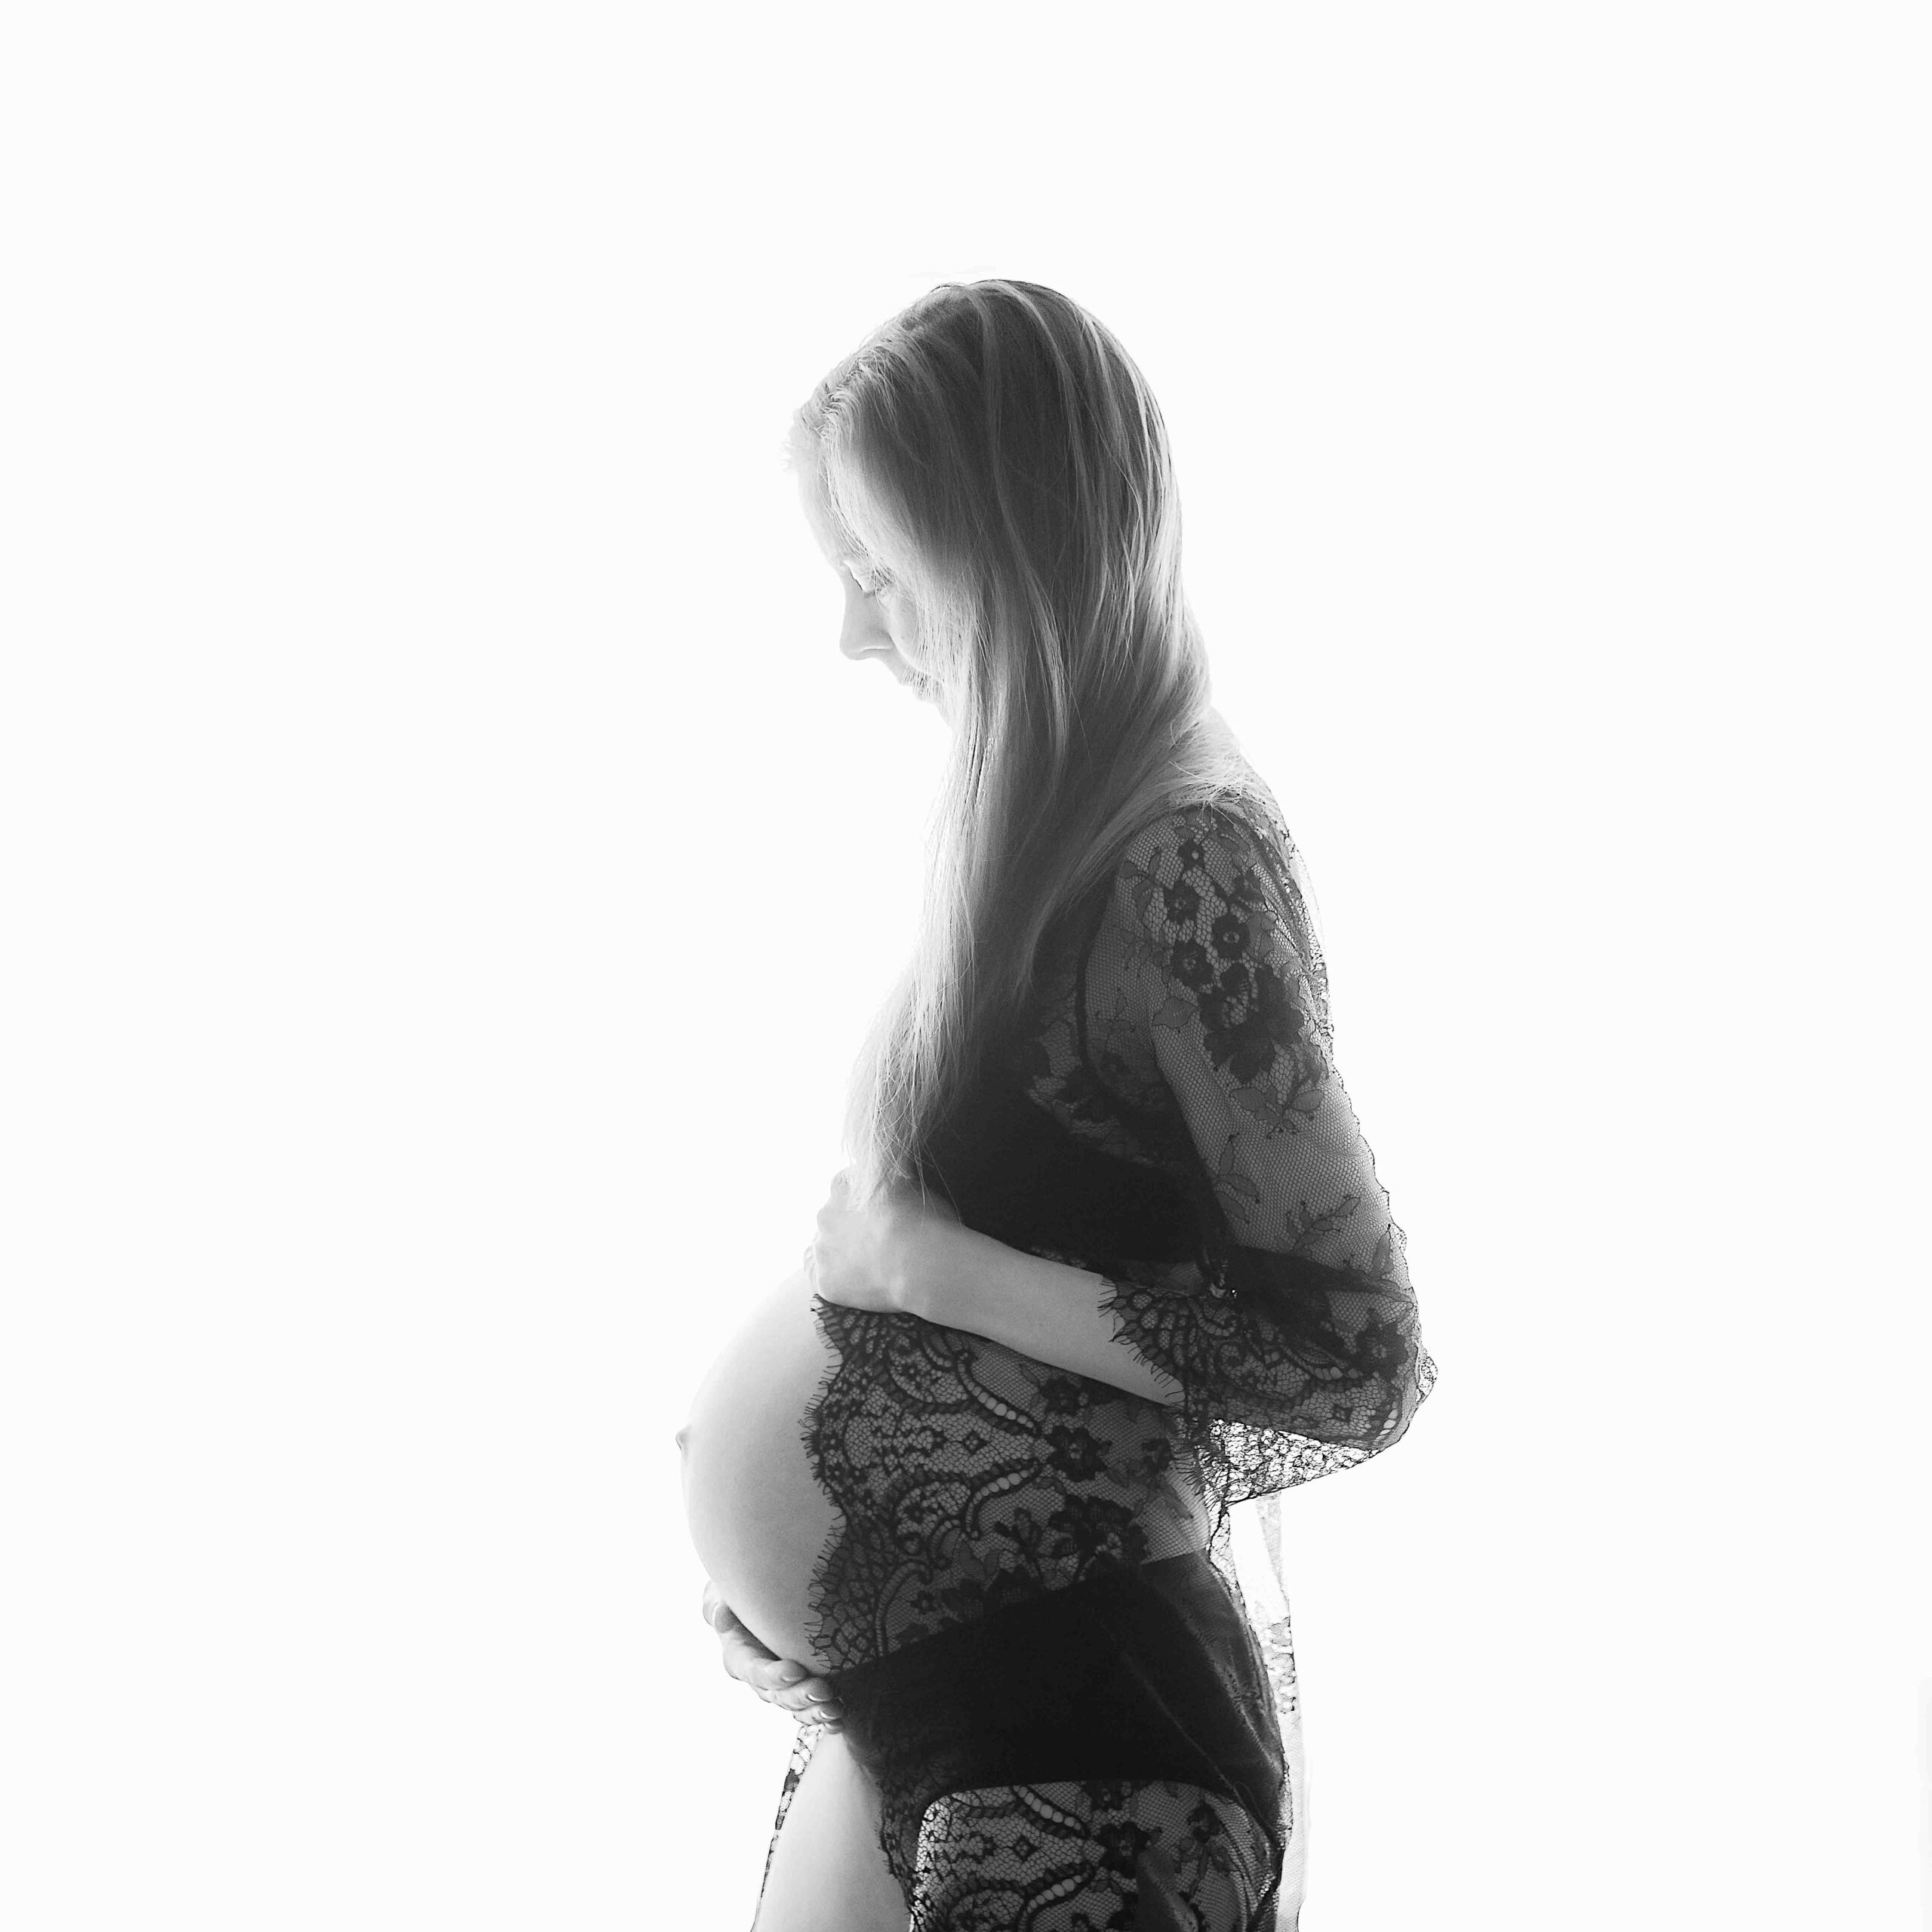 Sort/hvitt bilde av en gravid kvinne fotografert i profil. Sort blondetopp, langt hår, mor holder rundt magen sin.